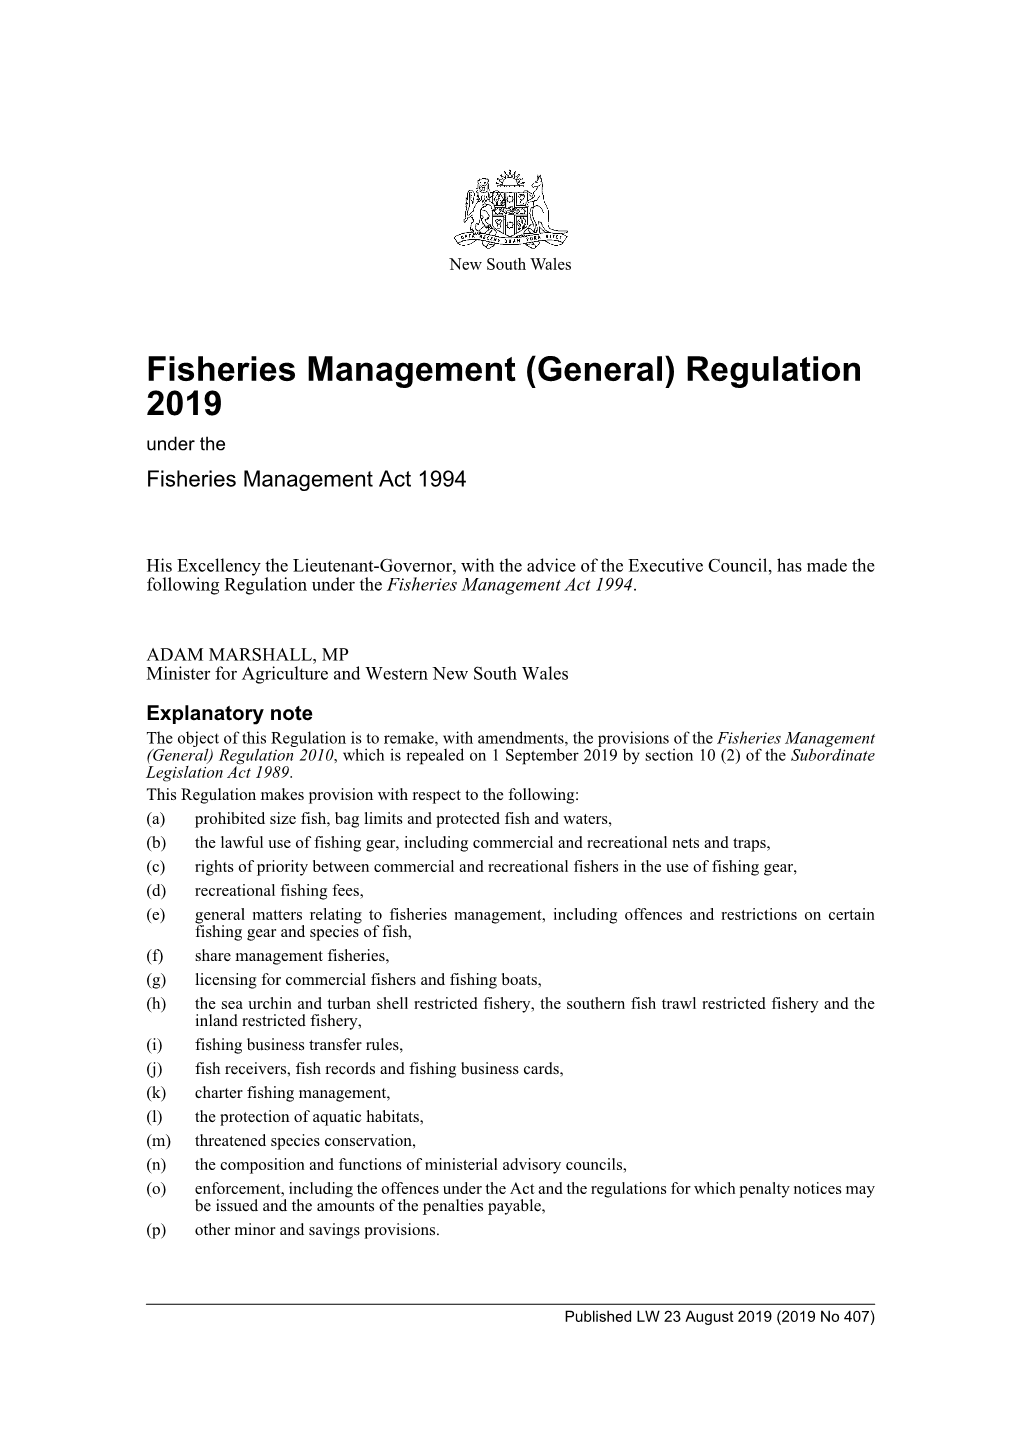 Fisheries Management (General) Regulation 2019 Under the Fisheries Management Act 1994